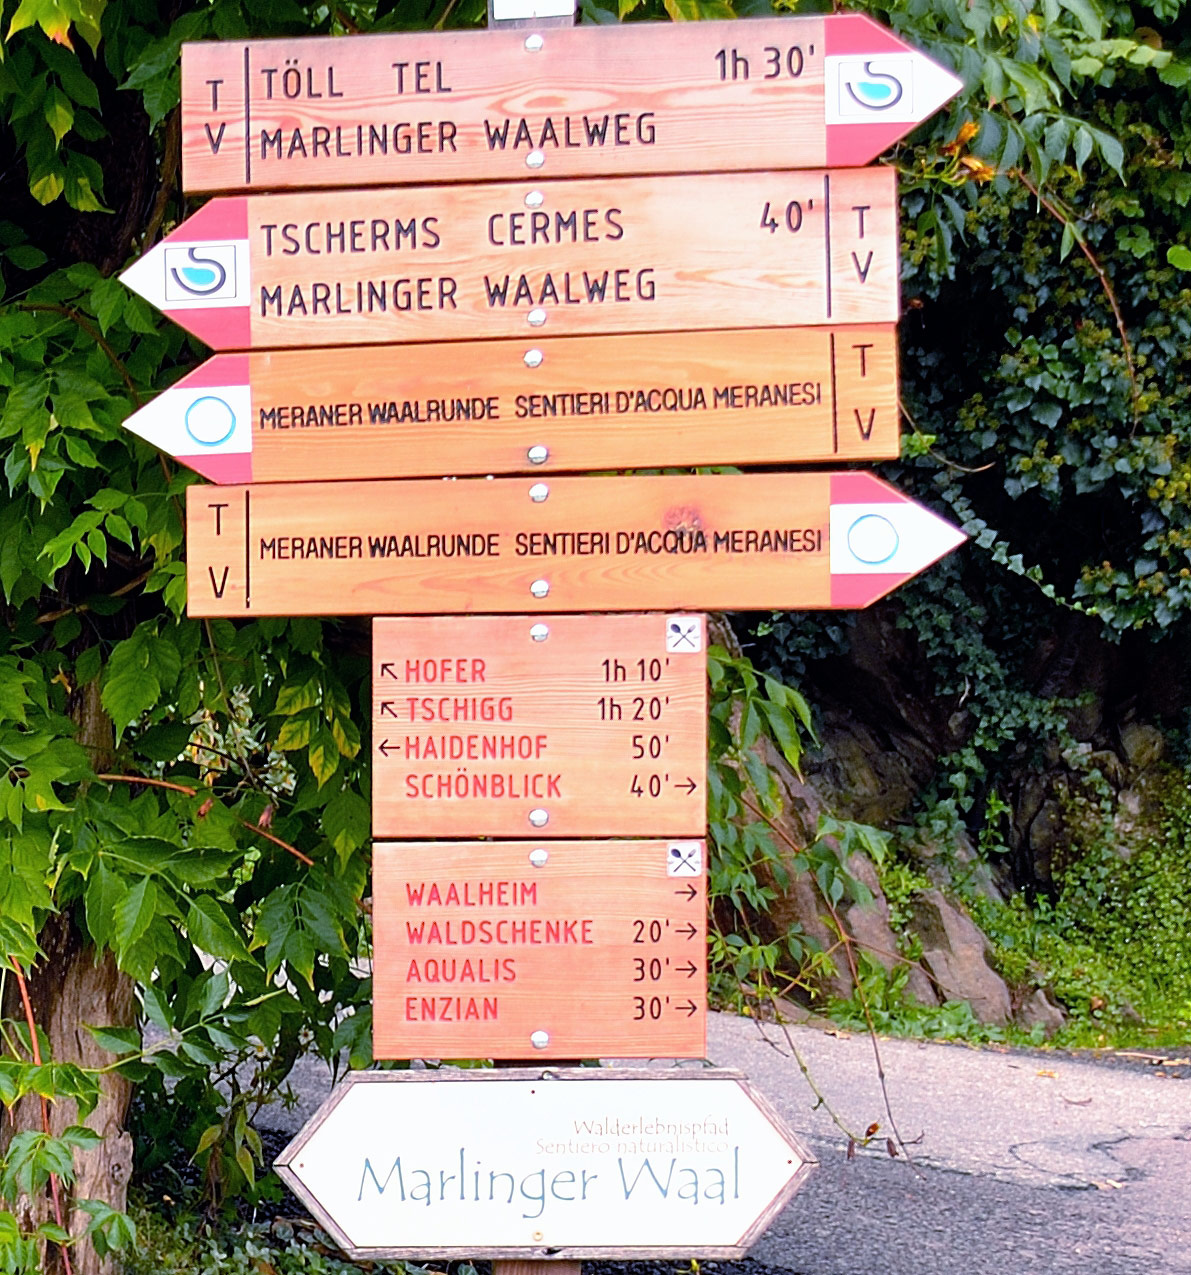 Der Marlinger Waalweg wurde bereits vor 250 Jahren gebaut und ist heute noch nach wie vor in Betrieb.